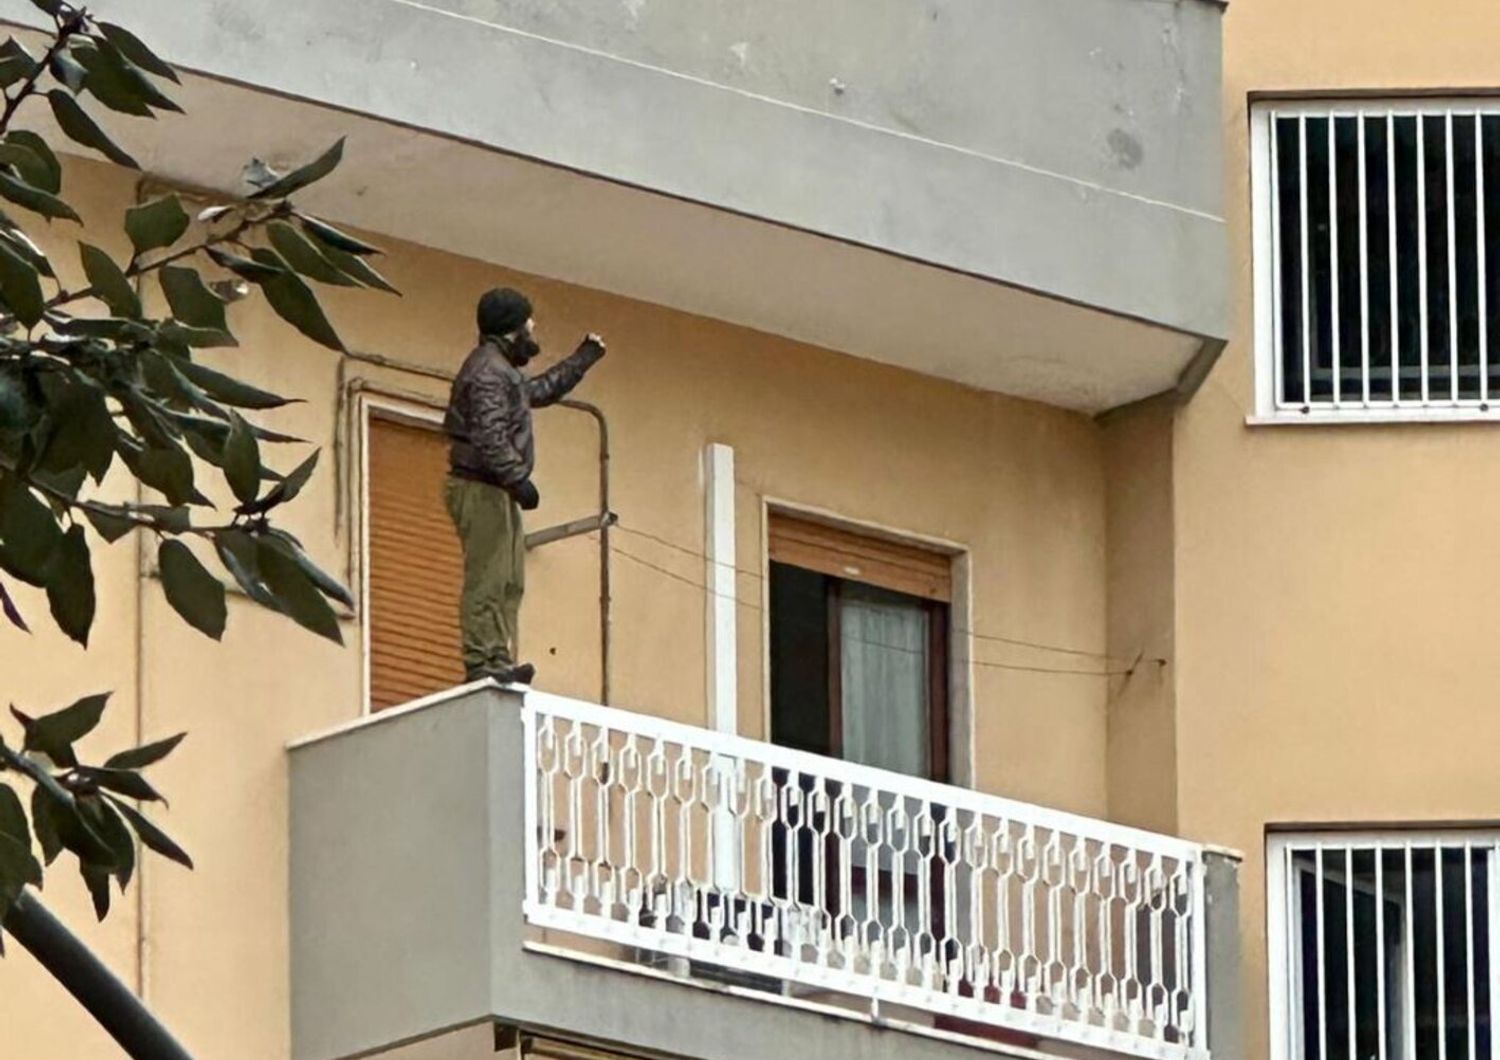 L'uomo che minaccia di buttarsi dal balcone del quinto piano del palazzo a Pescara